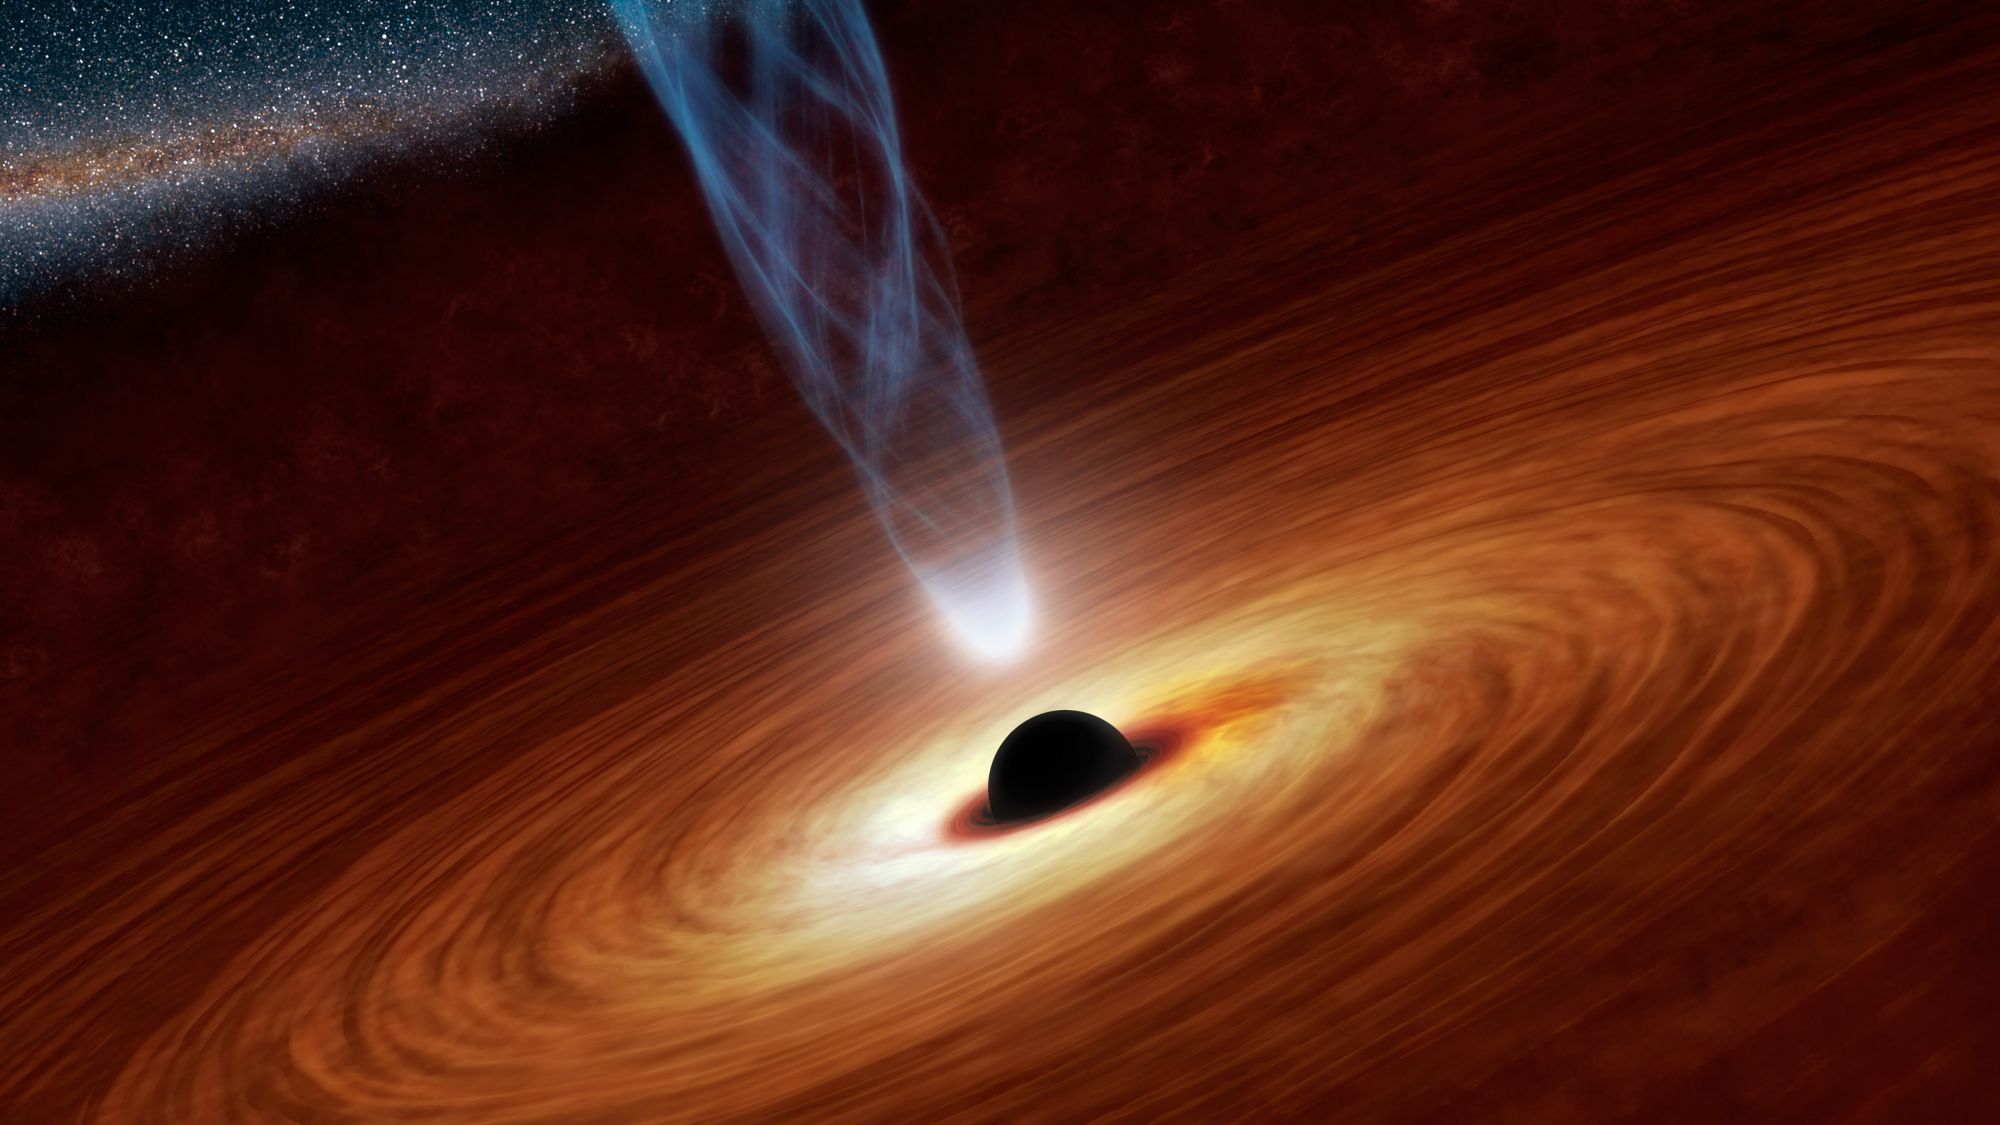 Les trous noirs supermassifs observés ont une particularité étonnante : leurs jets de matière sont alignés… Toute une région de l'univers aurait donc pu être en rotation. Aucune théorie n'avait prédit un tel phénomène. Serait-ce le signe d'une nouvelle physique ? © Nasa, JPL-Caltech